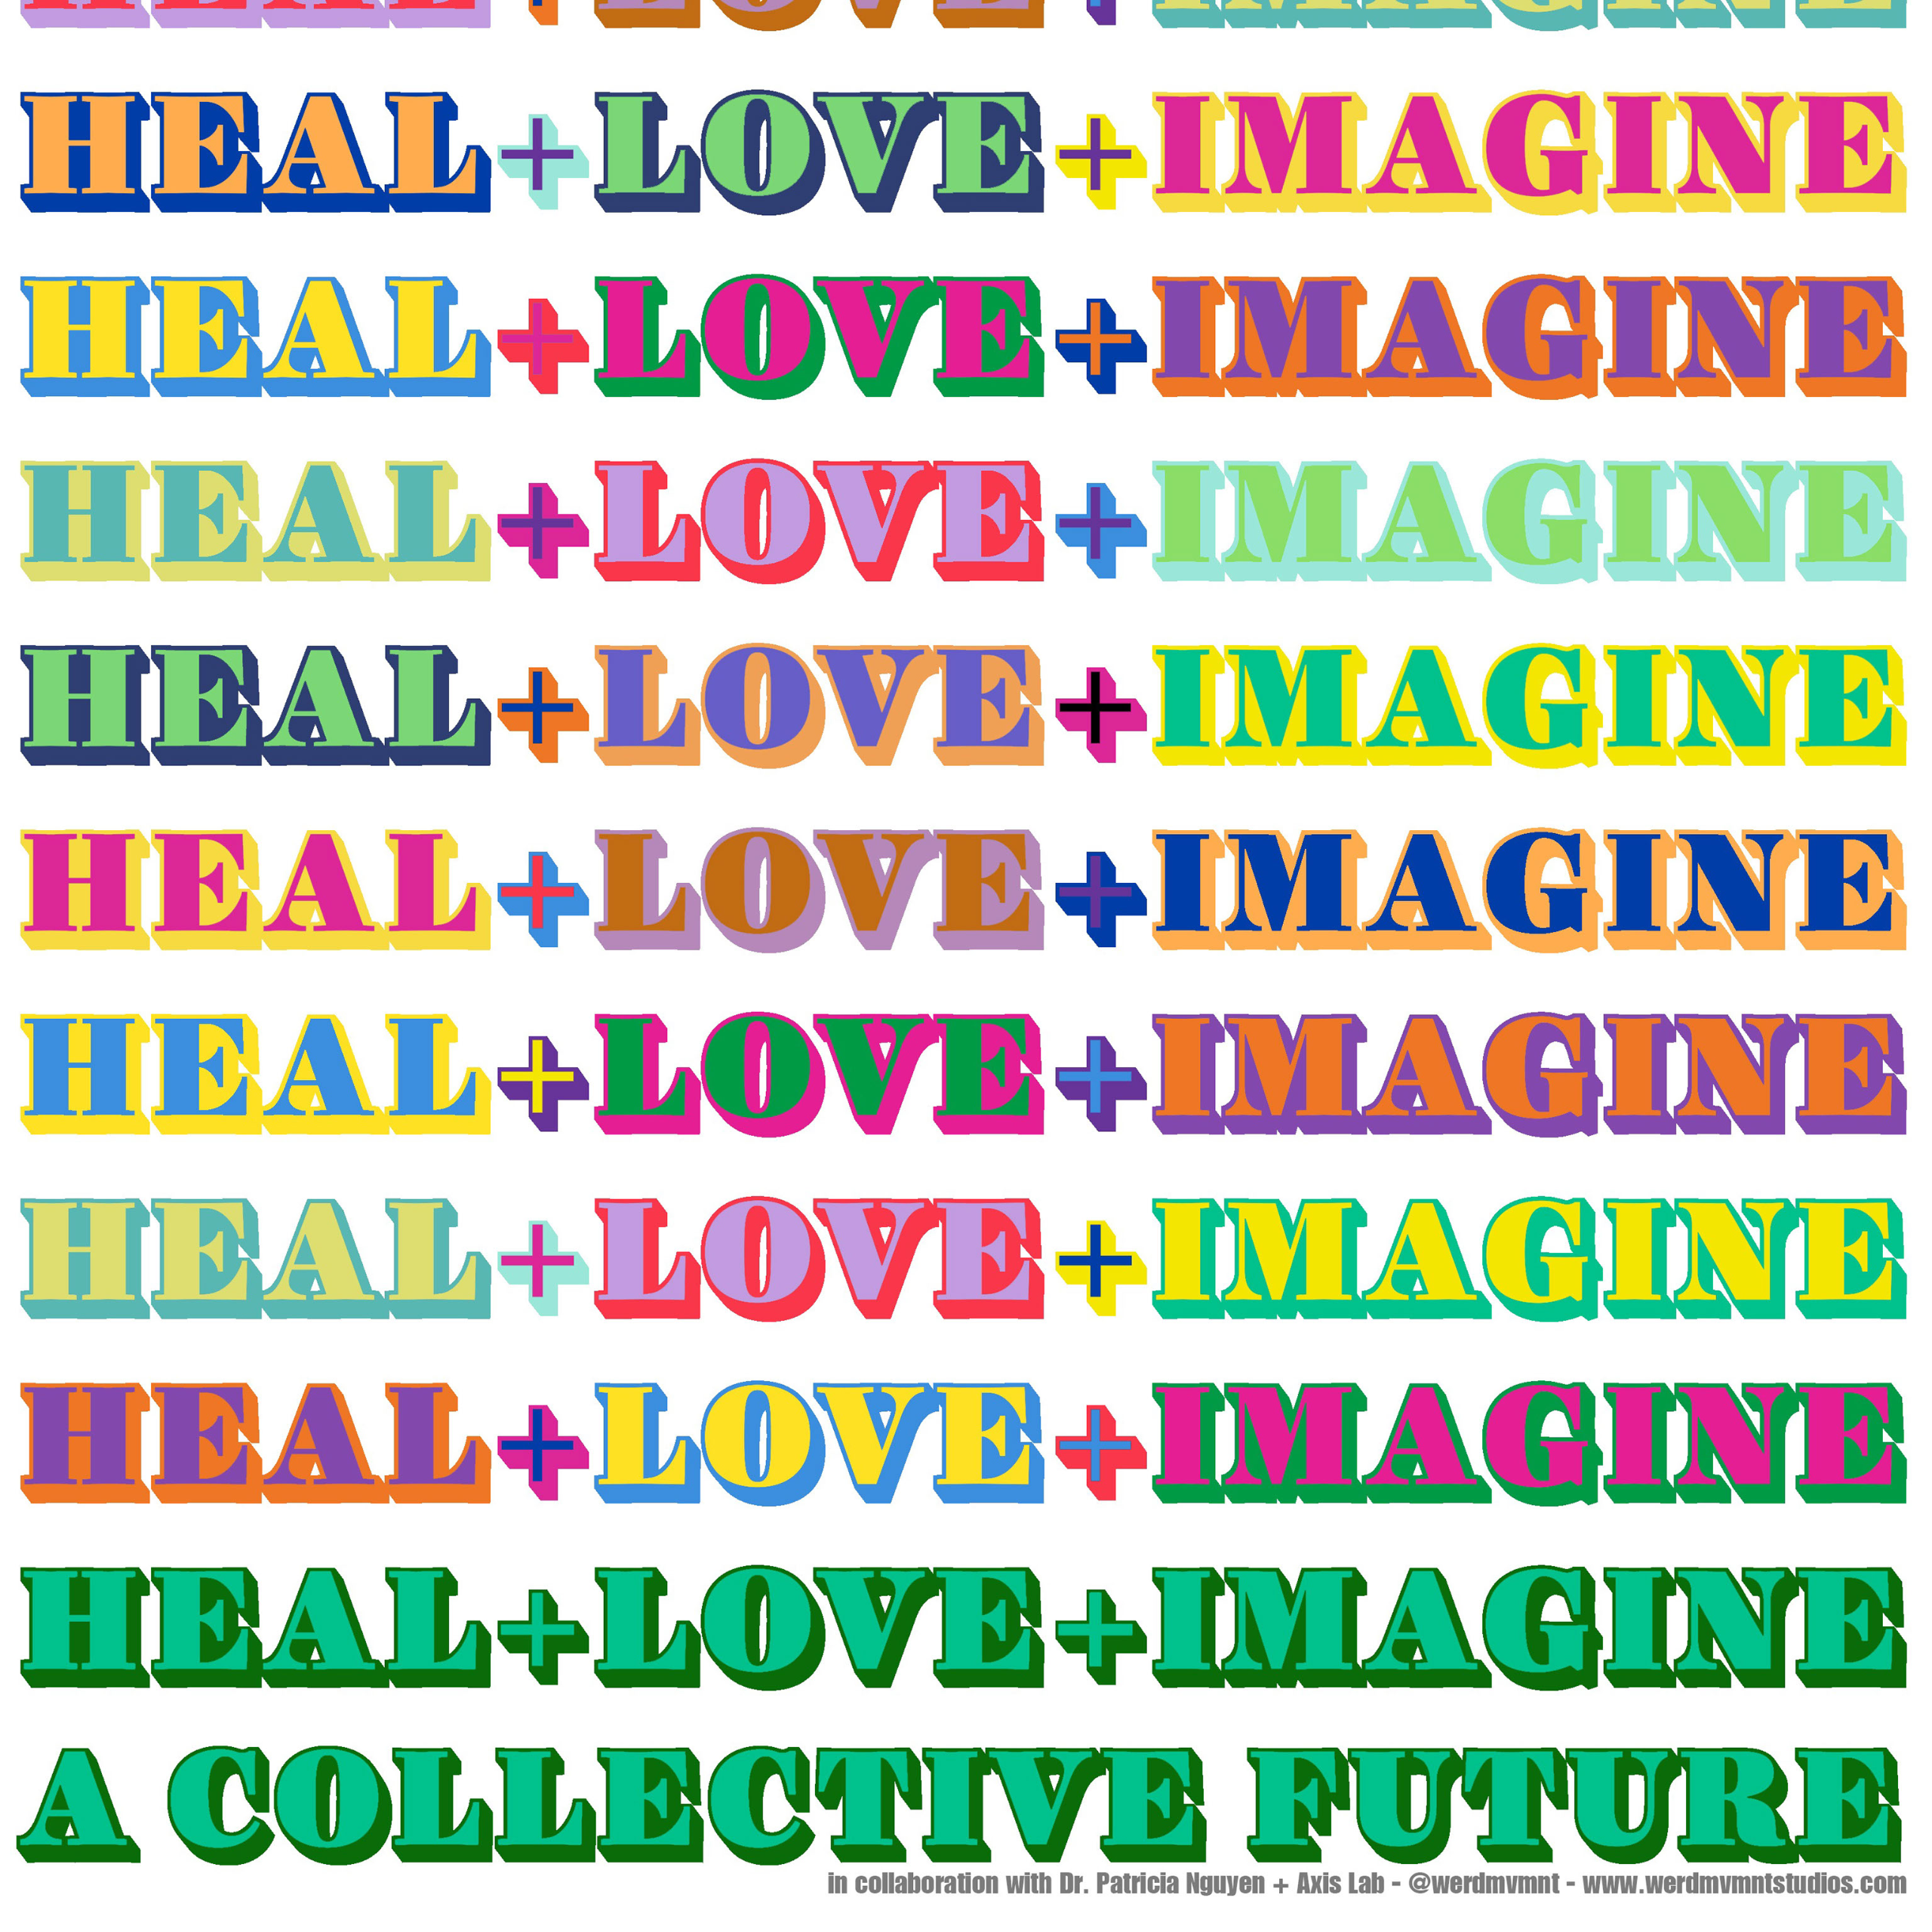 Heal + Love + Imagine A Collective Future